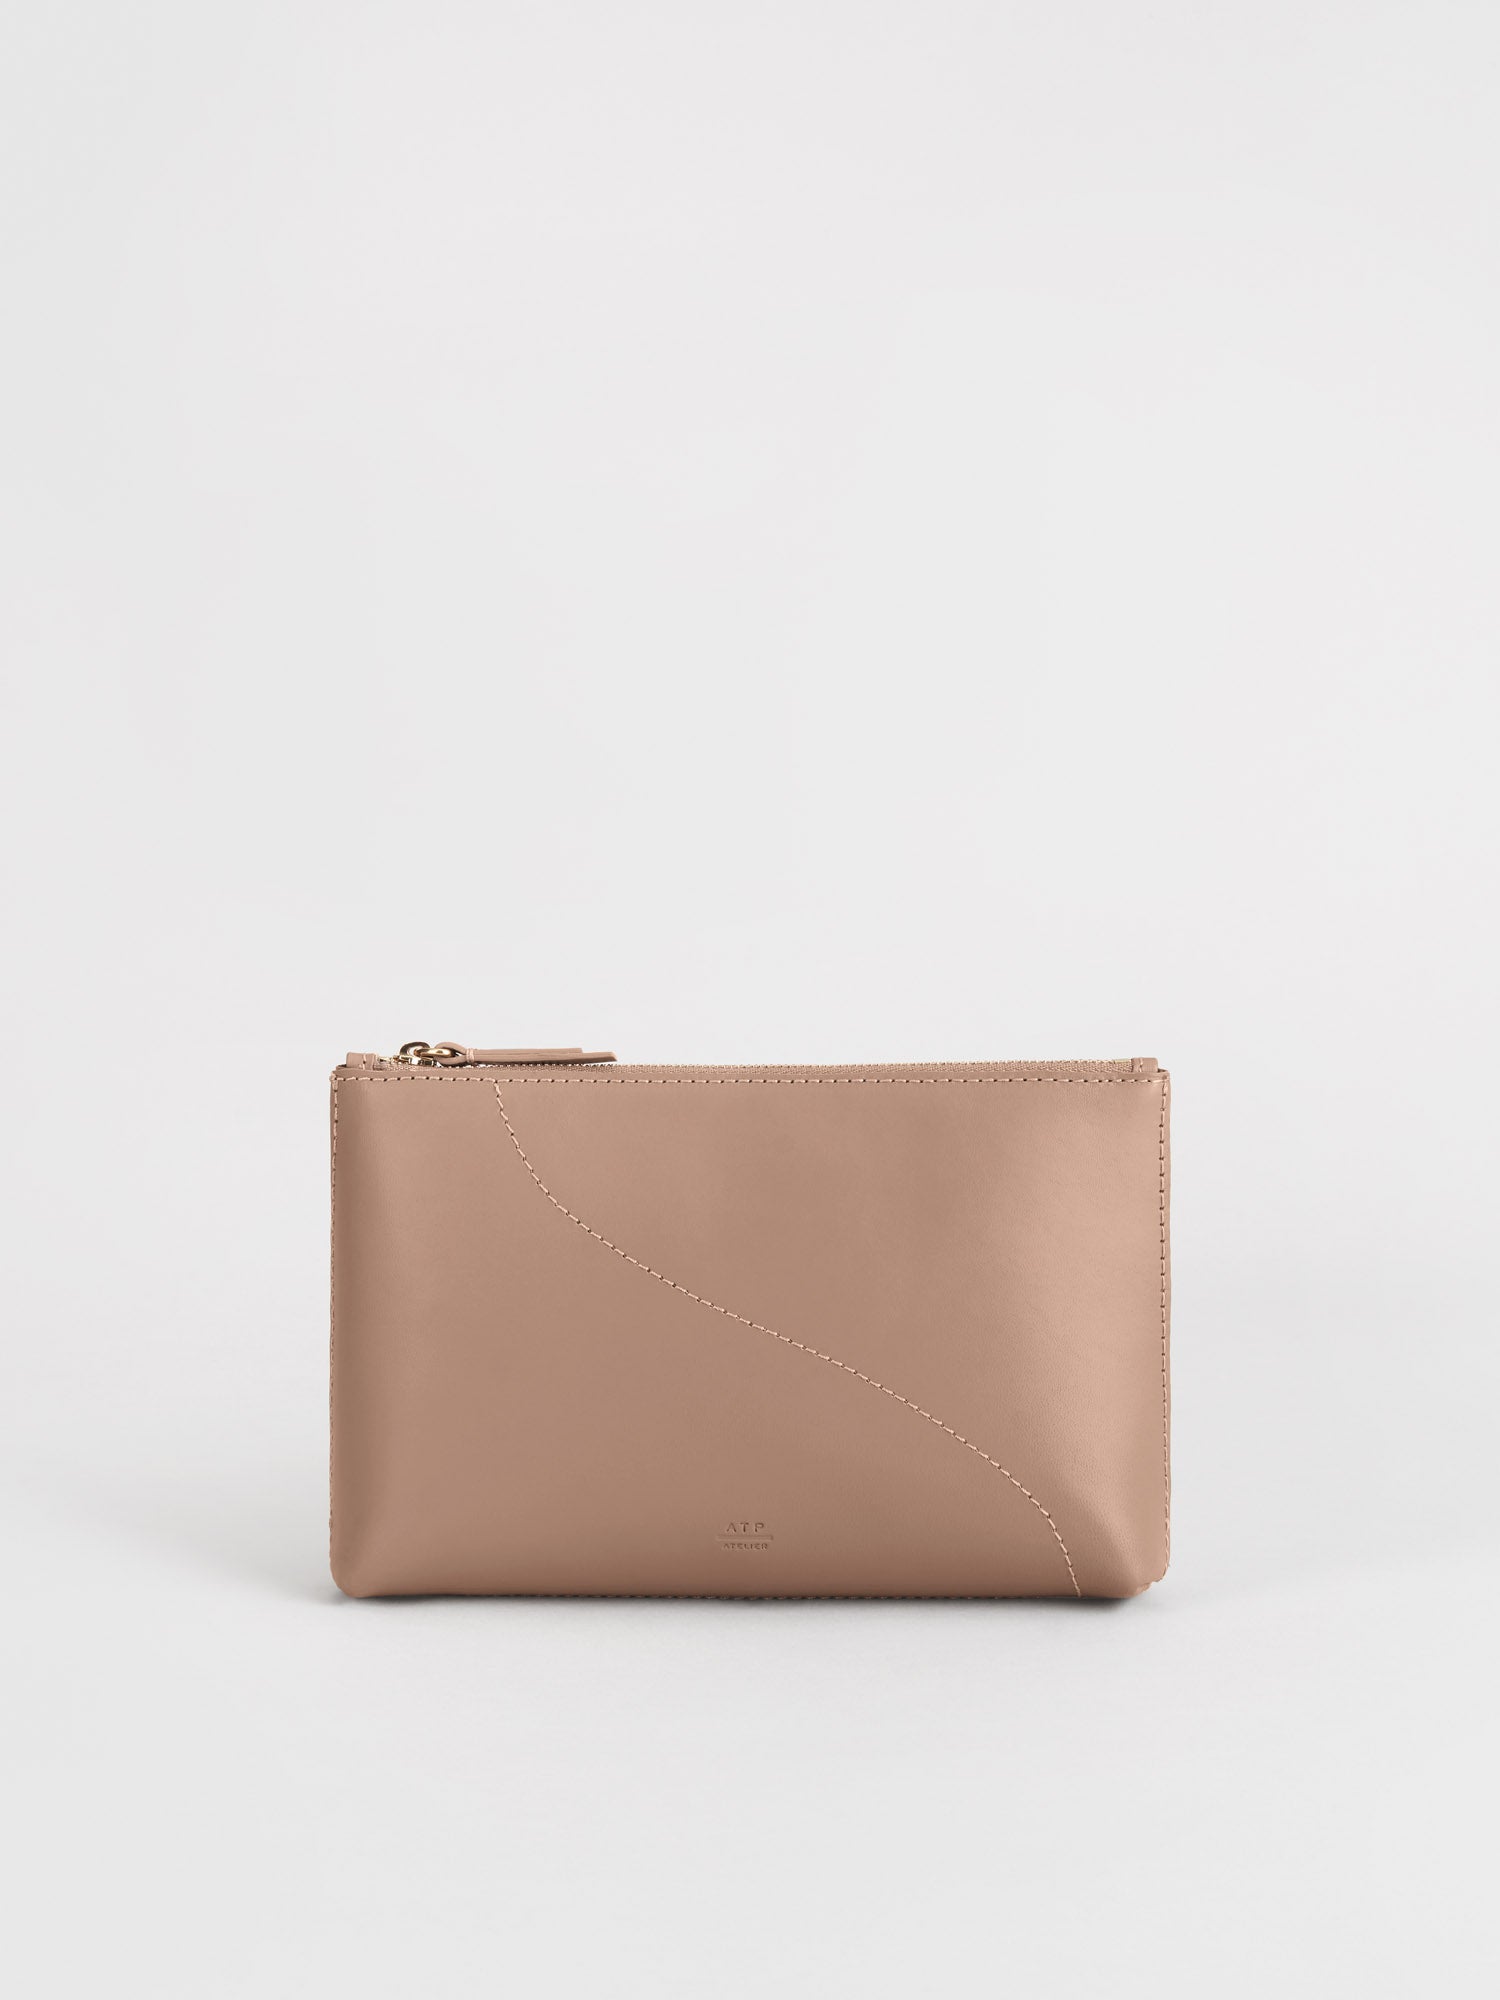 Solaio Hazelnut Leather Beauty Bag